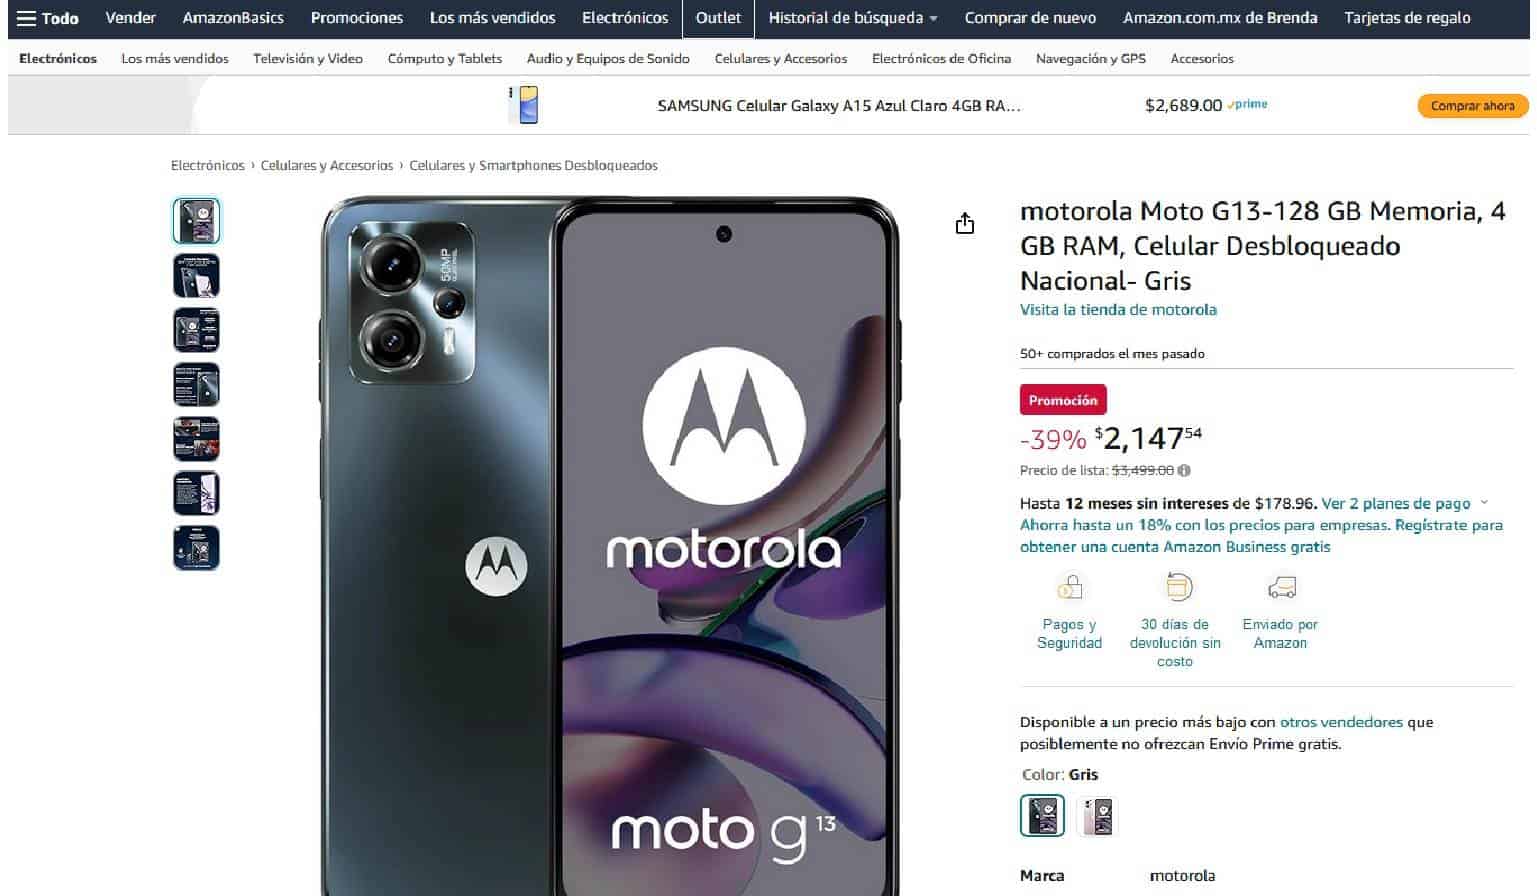 Cuánto cuesta el celular Motorola Moto G13 en Amazon